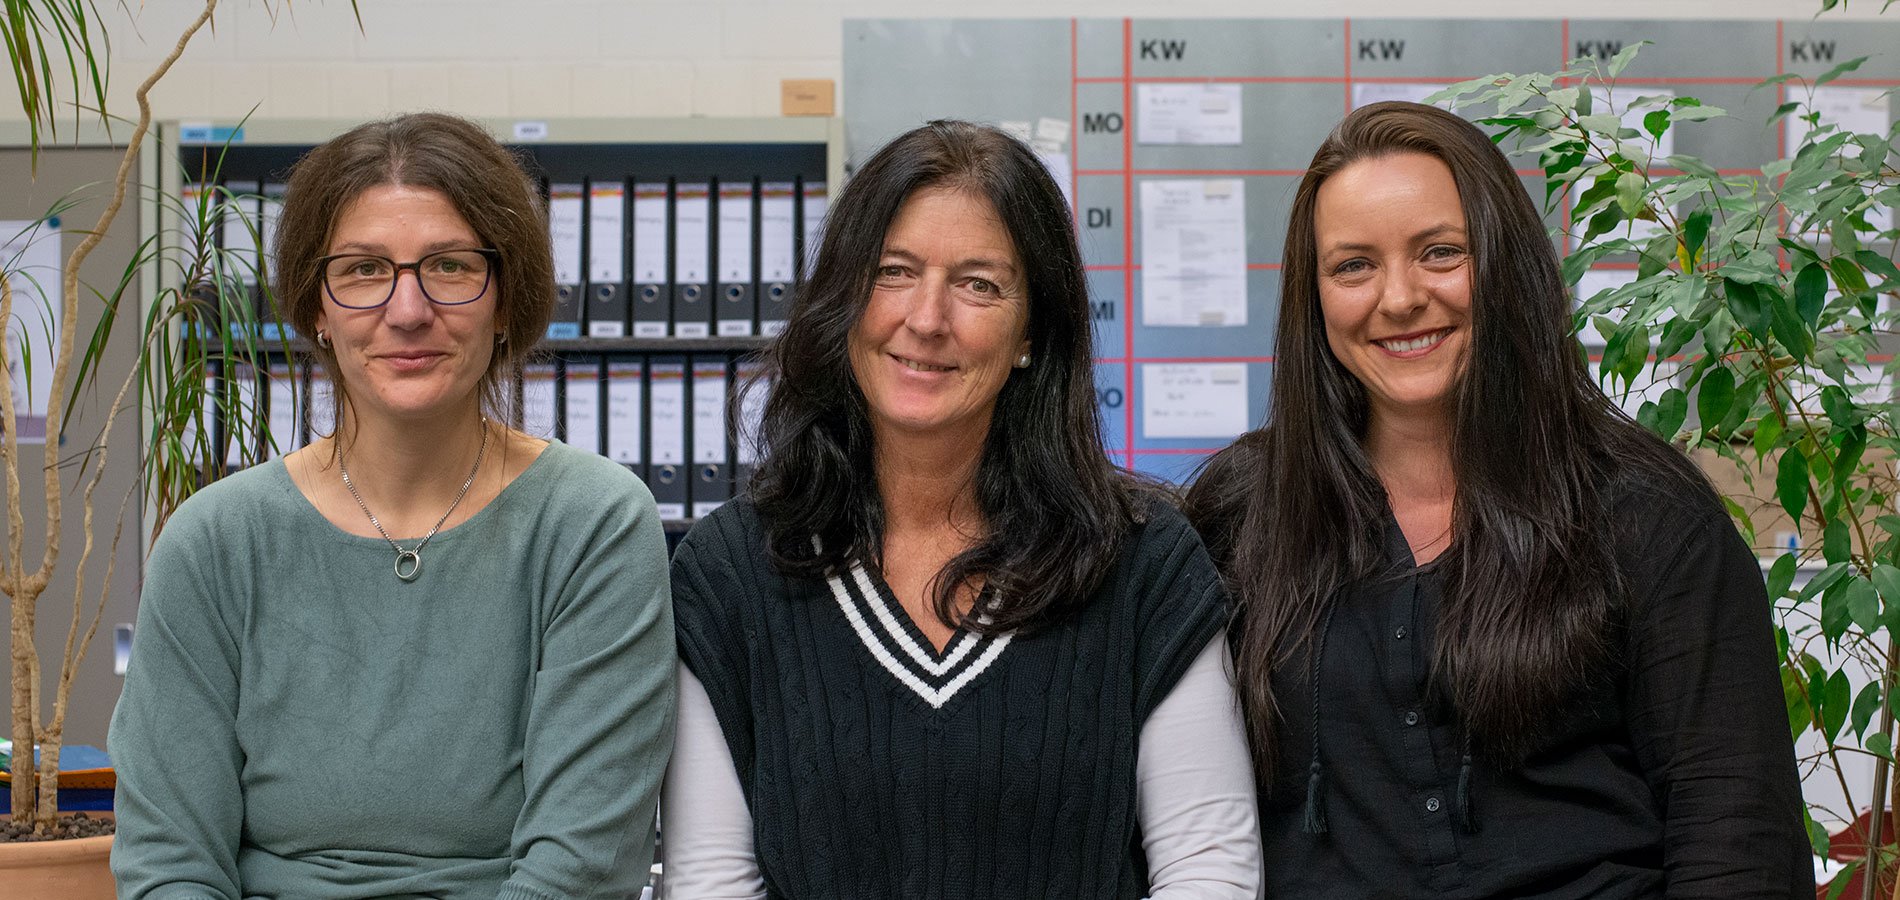 Das Büroteam - von links: Nadine Herfort, Kerstin Lüders, Jessica Fuchs